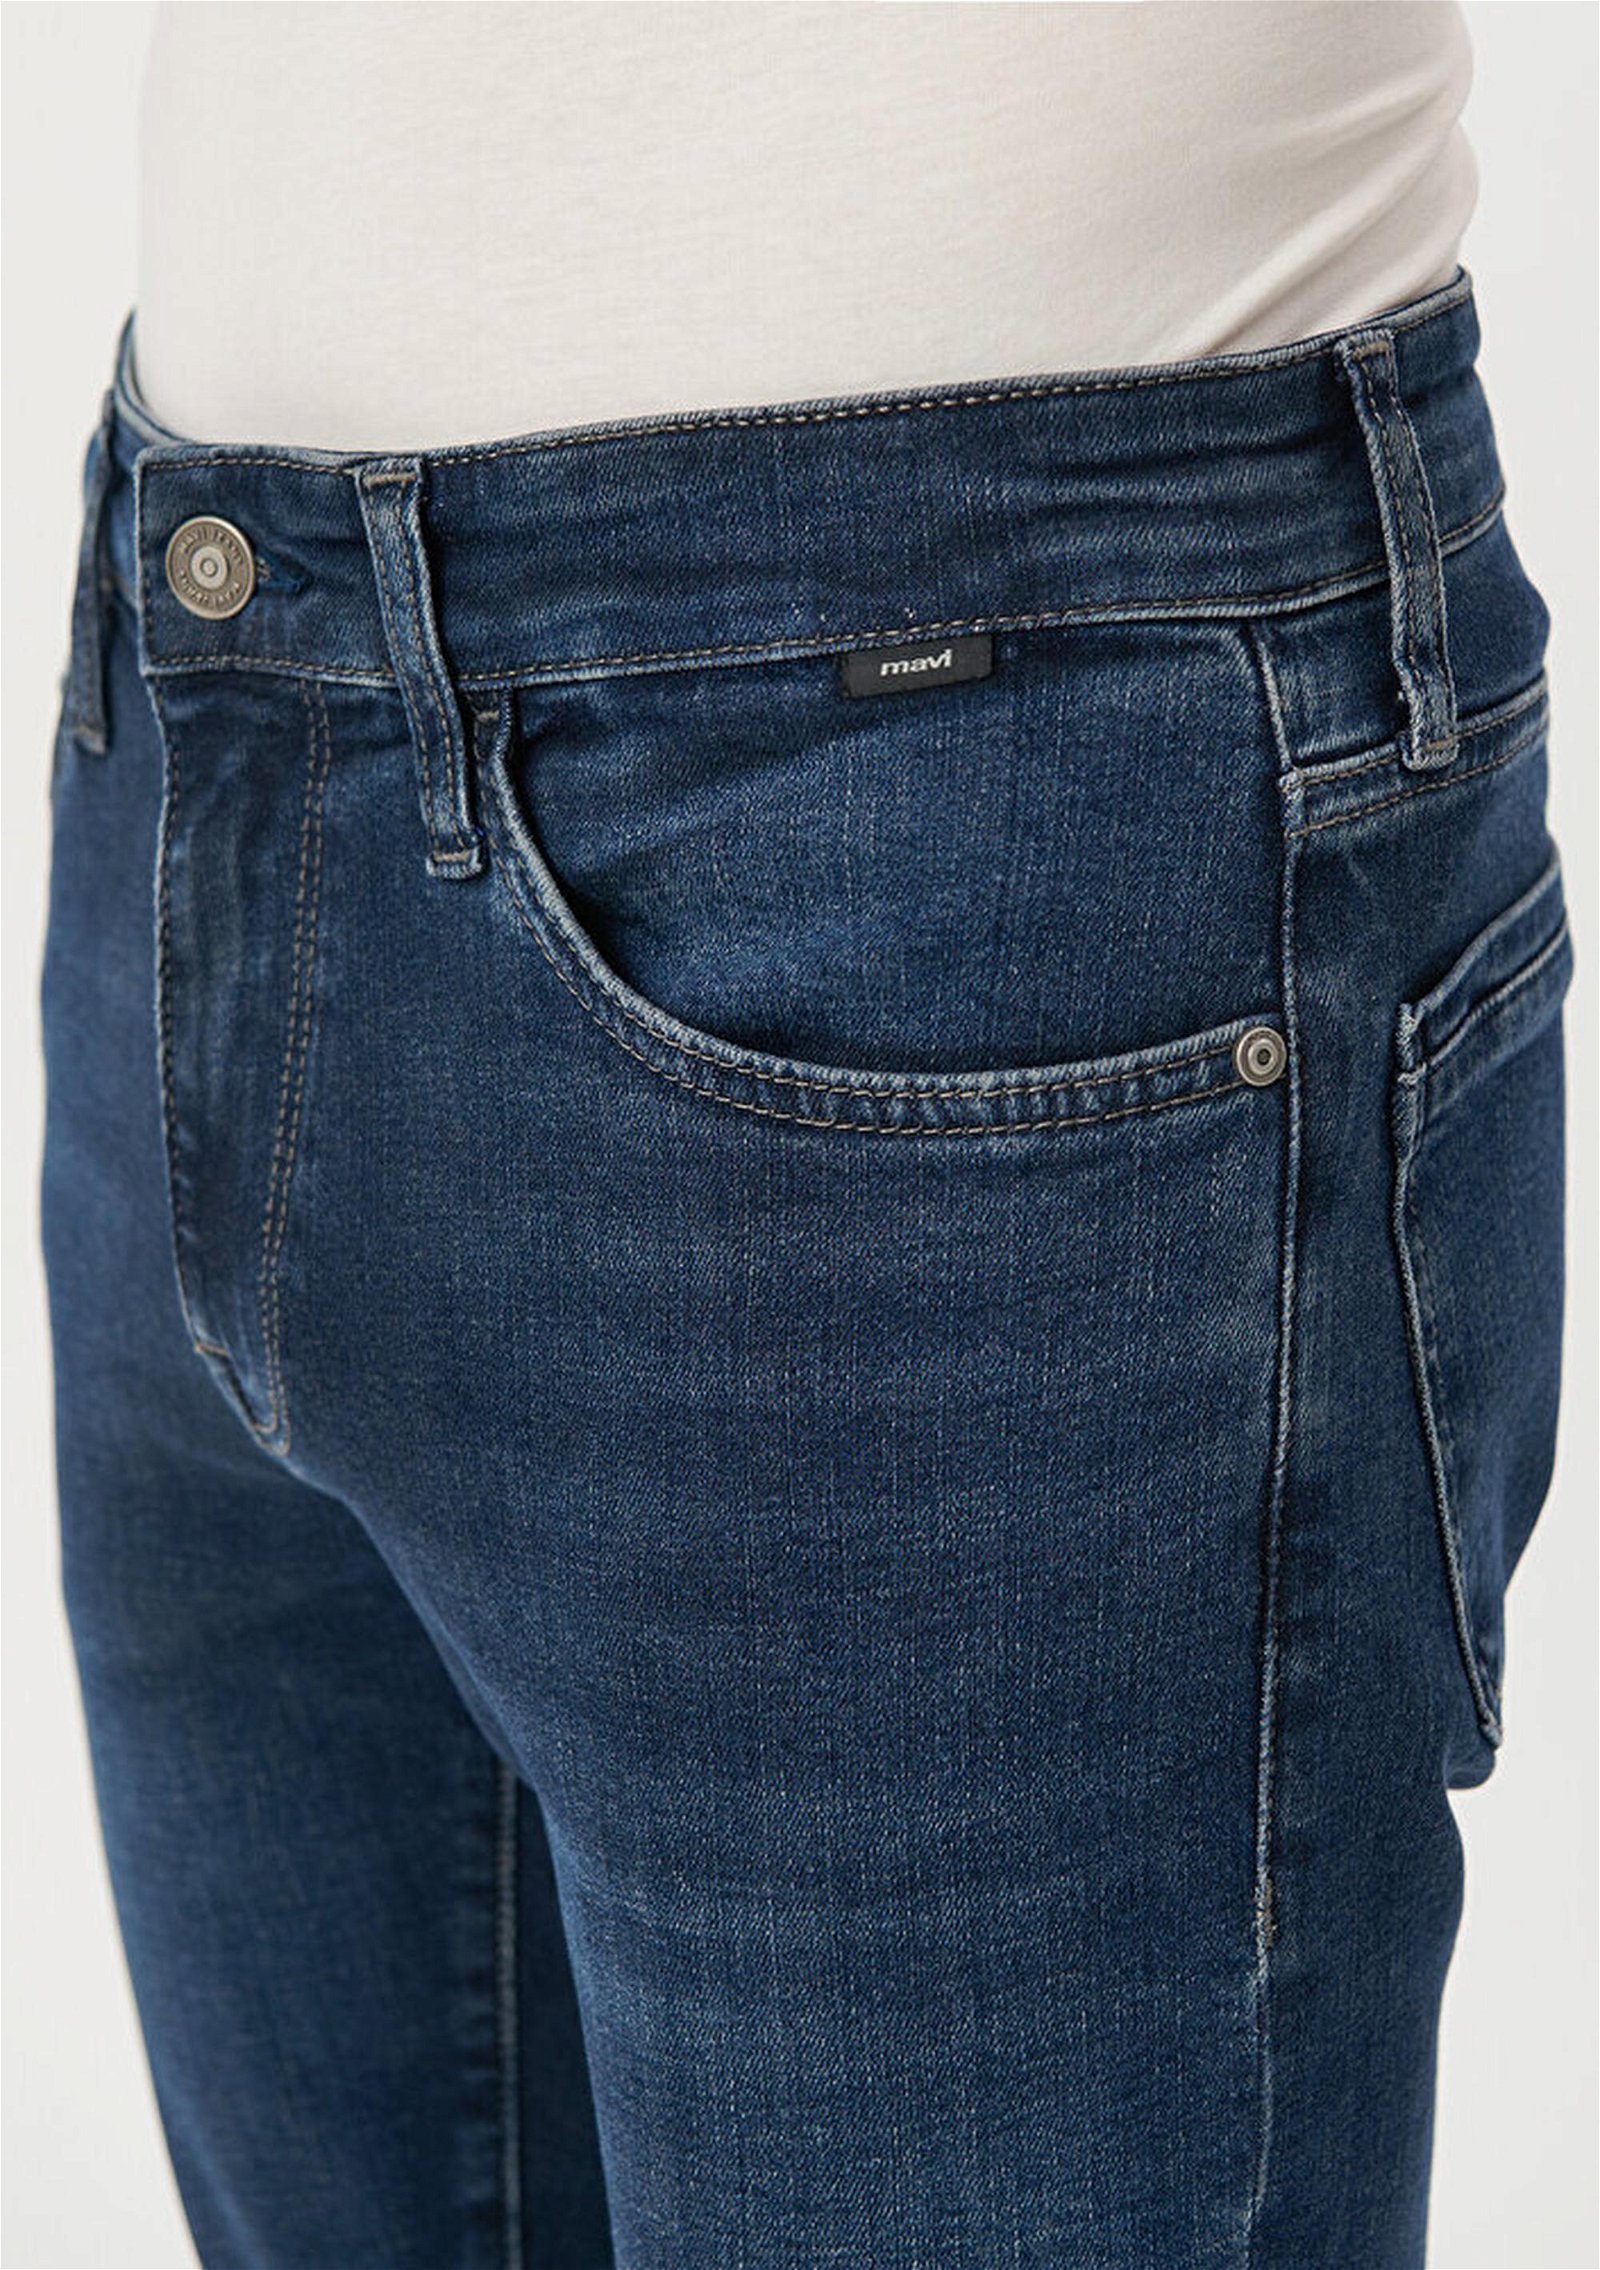 Mavi James Murekkep Vintage Mavi Premium Jean Pantolon 0042482290